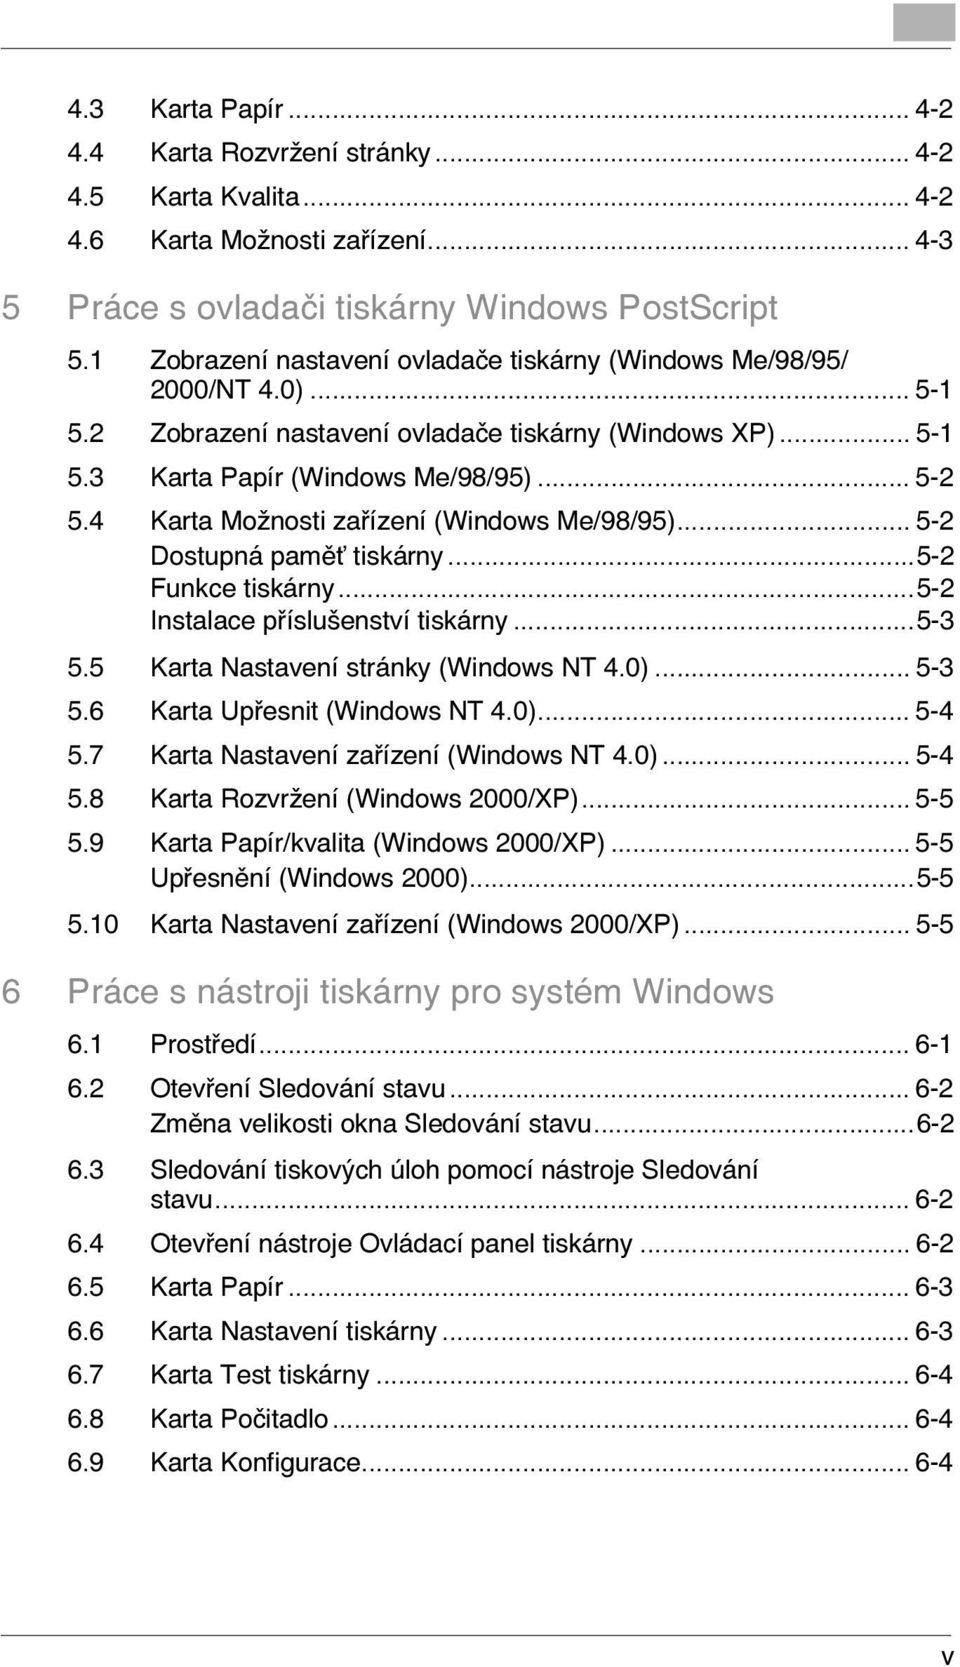 4 Karta Možnosti zařízení (Windows Me/98/95)... 5-2 Dostupná paměù tiskárny...5-2 Funkce tiskárny...5-2 Instalace příslušenství tiskárny...5-3 5.5 Karta Nastavení stránky (Windows NT 4.0)... 5-3 5.